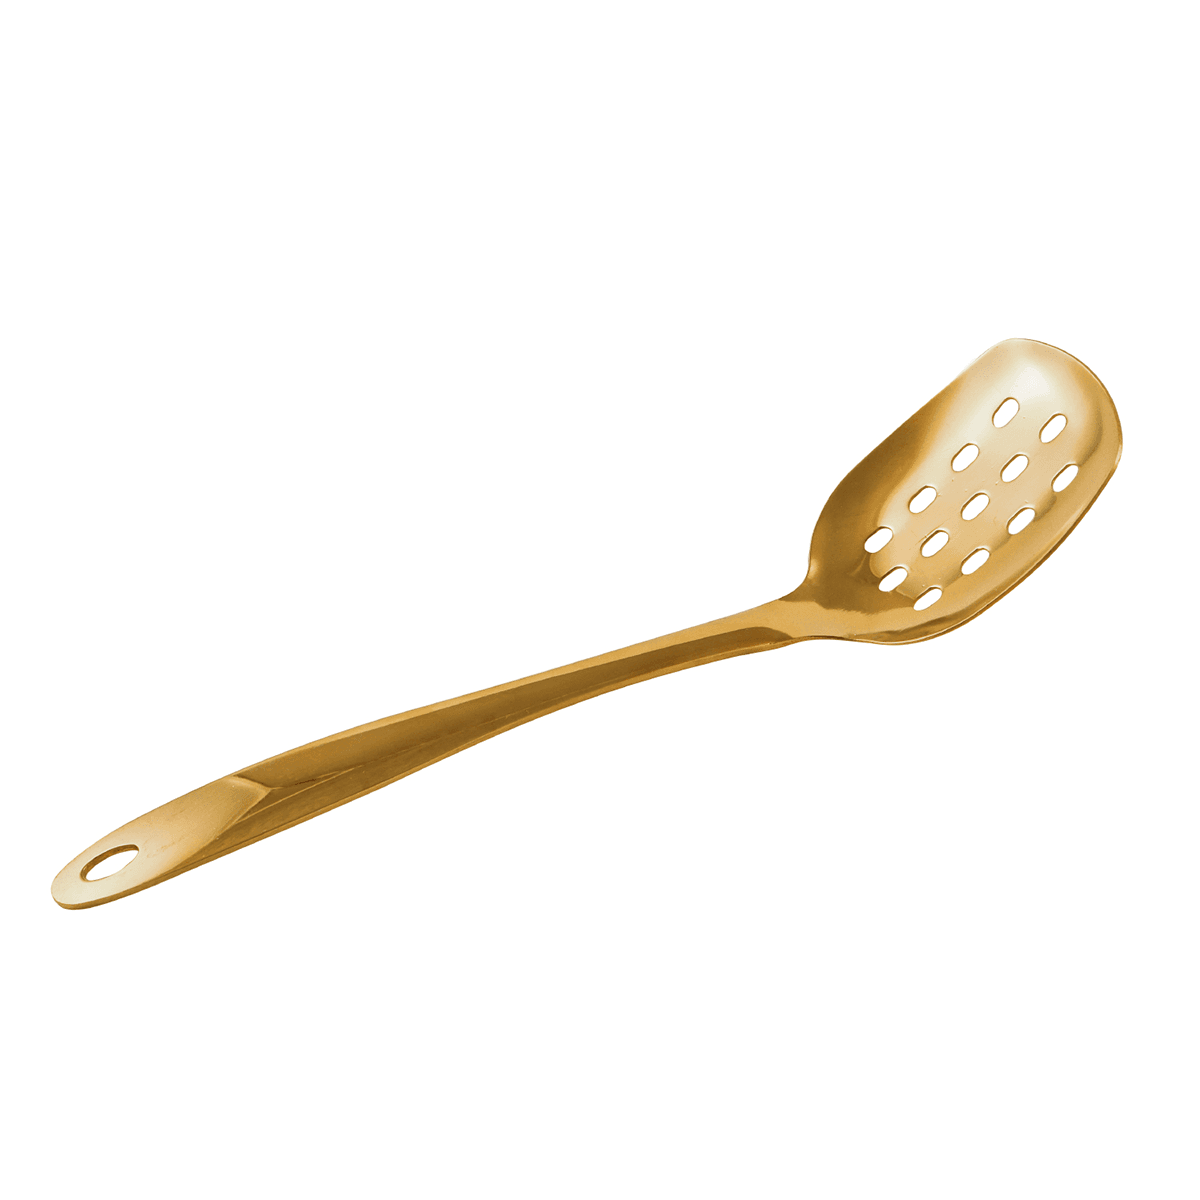 ملعقة تقليب مثقوبة ستانلس ستيل 25 سم ذهبي ڤاج Vague Stainless Steel Gold Serving Spoon with Hole 25 cm